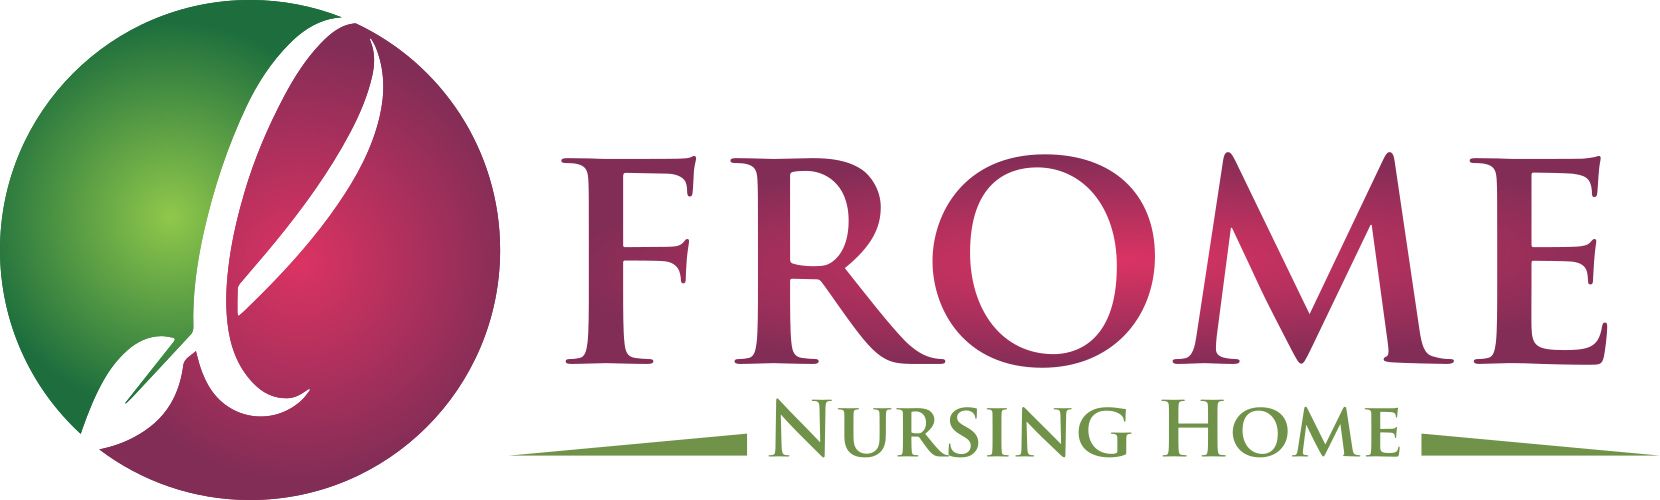 Frome Nursing Home Logo